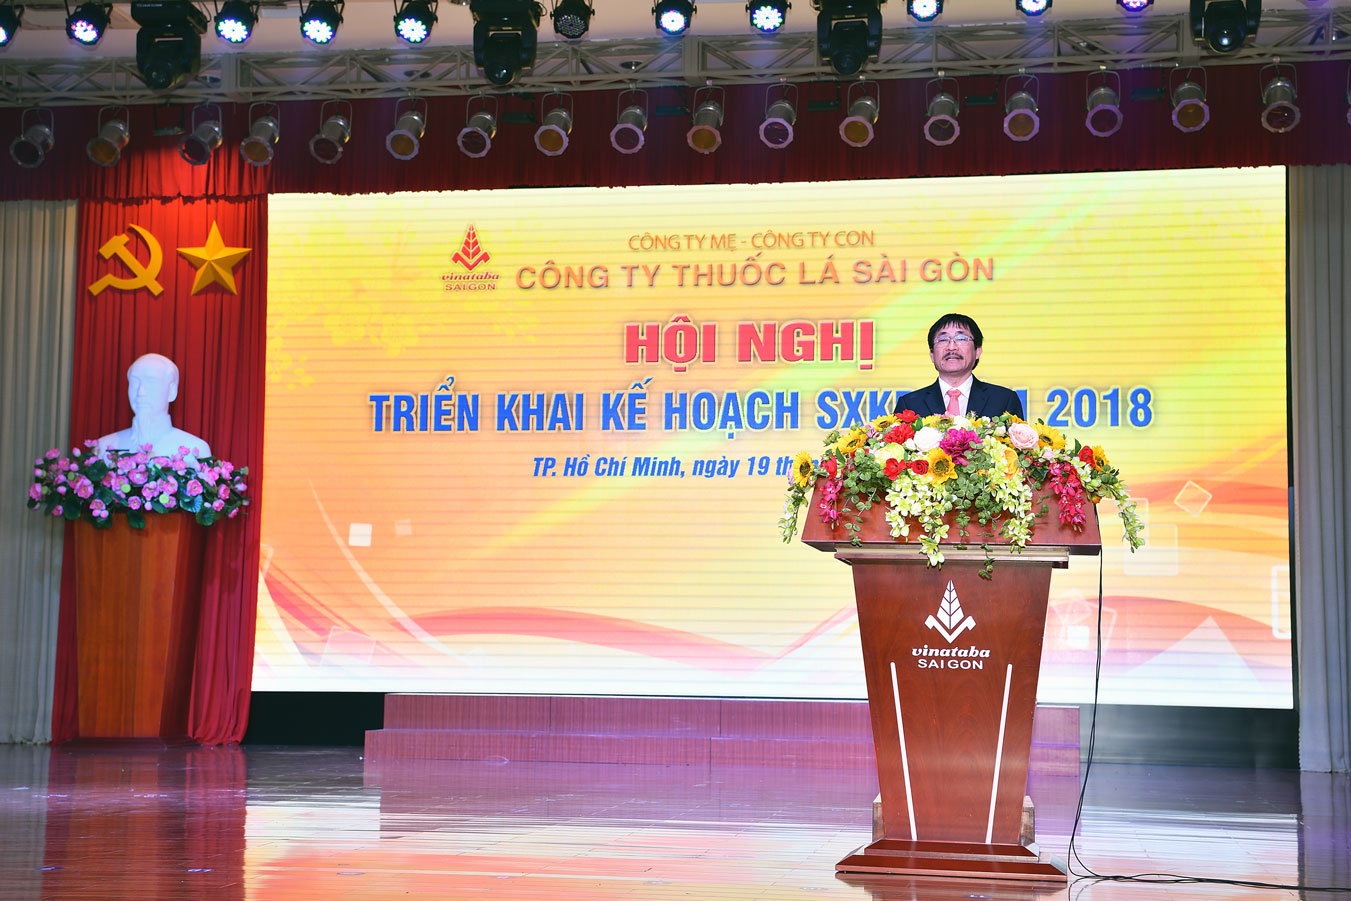 Ông Nguyễn Phương Đông – Chủ tịch HĐTV Công ty Thuốc lá Sài Gòn phát biểu tiếp thu ý kiến chỉ đạo của Tổng Công ty